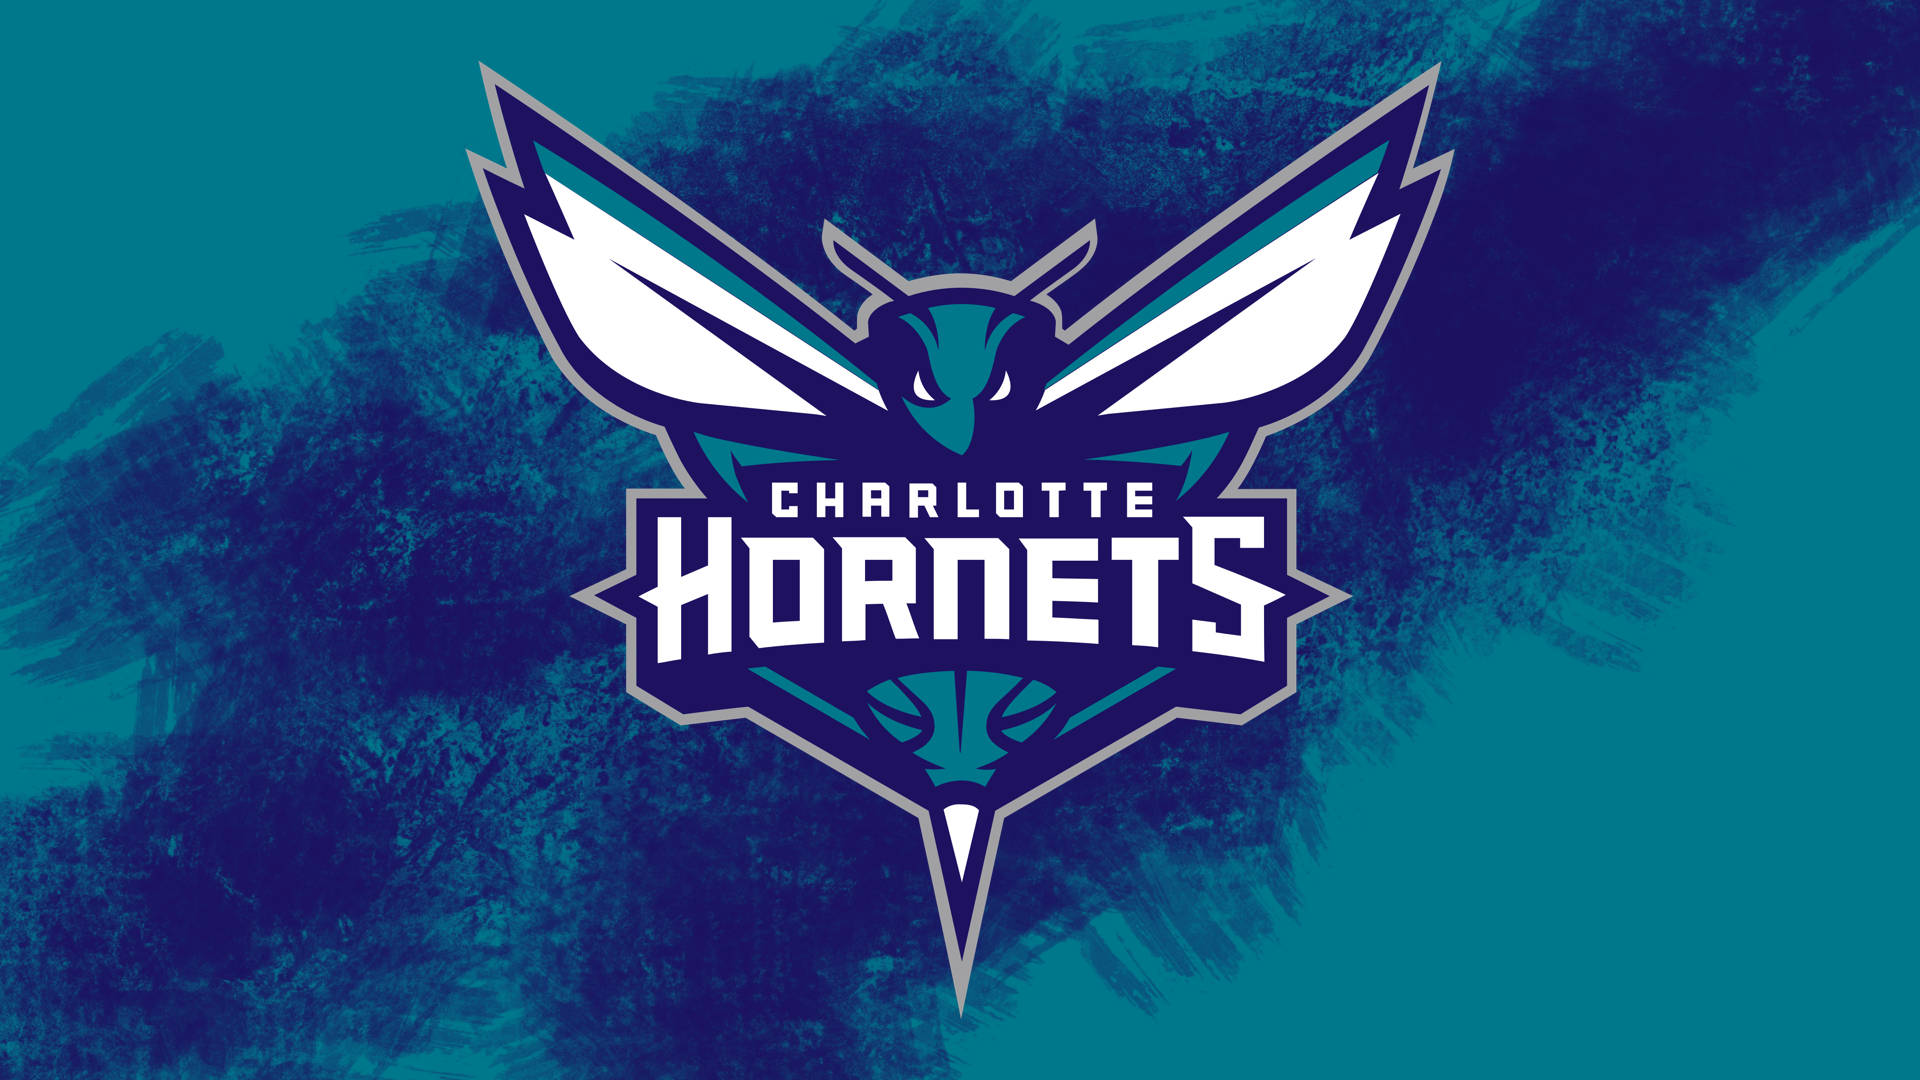 Charlotte Hornets Emblem Background